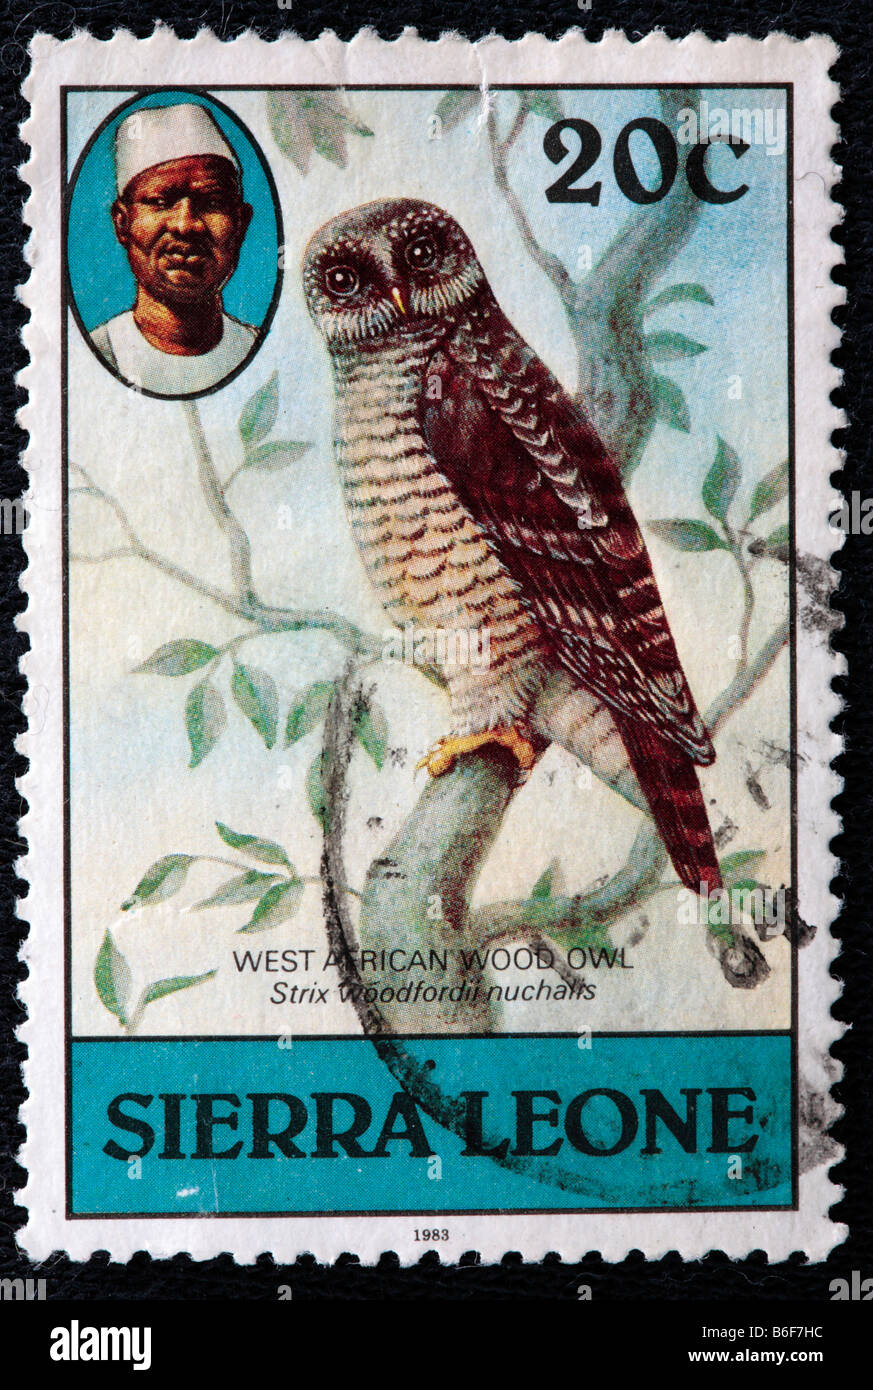 Bois d'Afrique (Owl Strix woodfordii), timbre-poste, la Sierra Leone, 1983 Banque D'Images